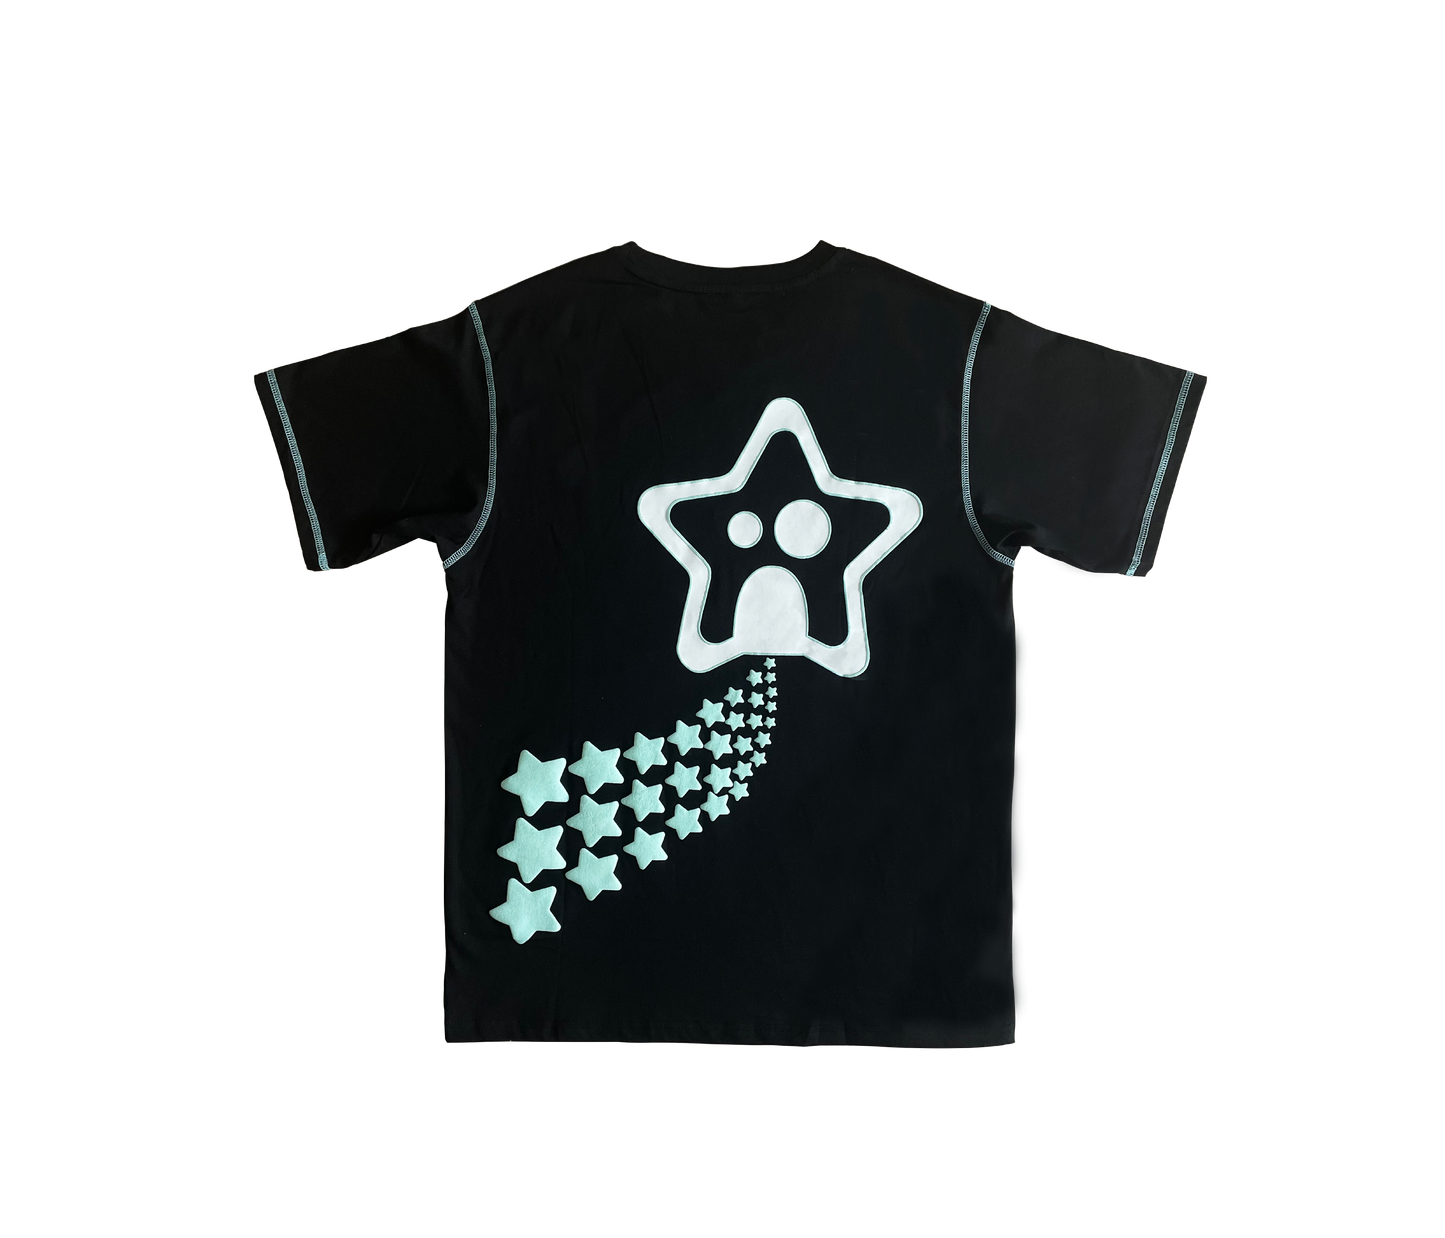 Interstellar Kai T-Shirt - Dark Space